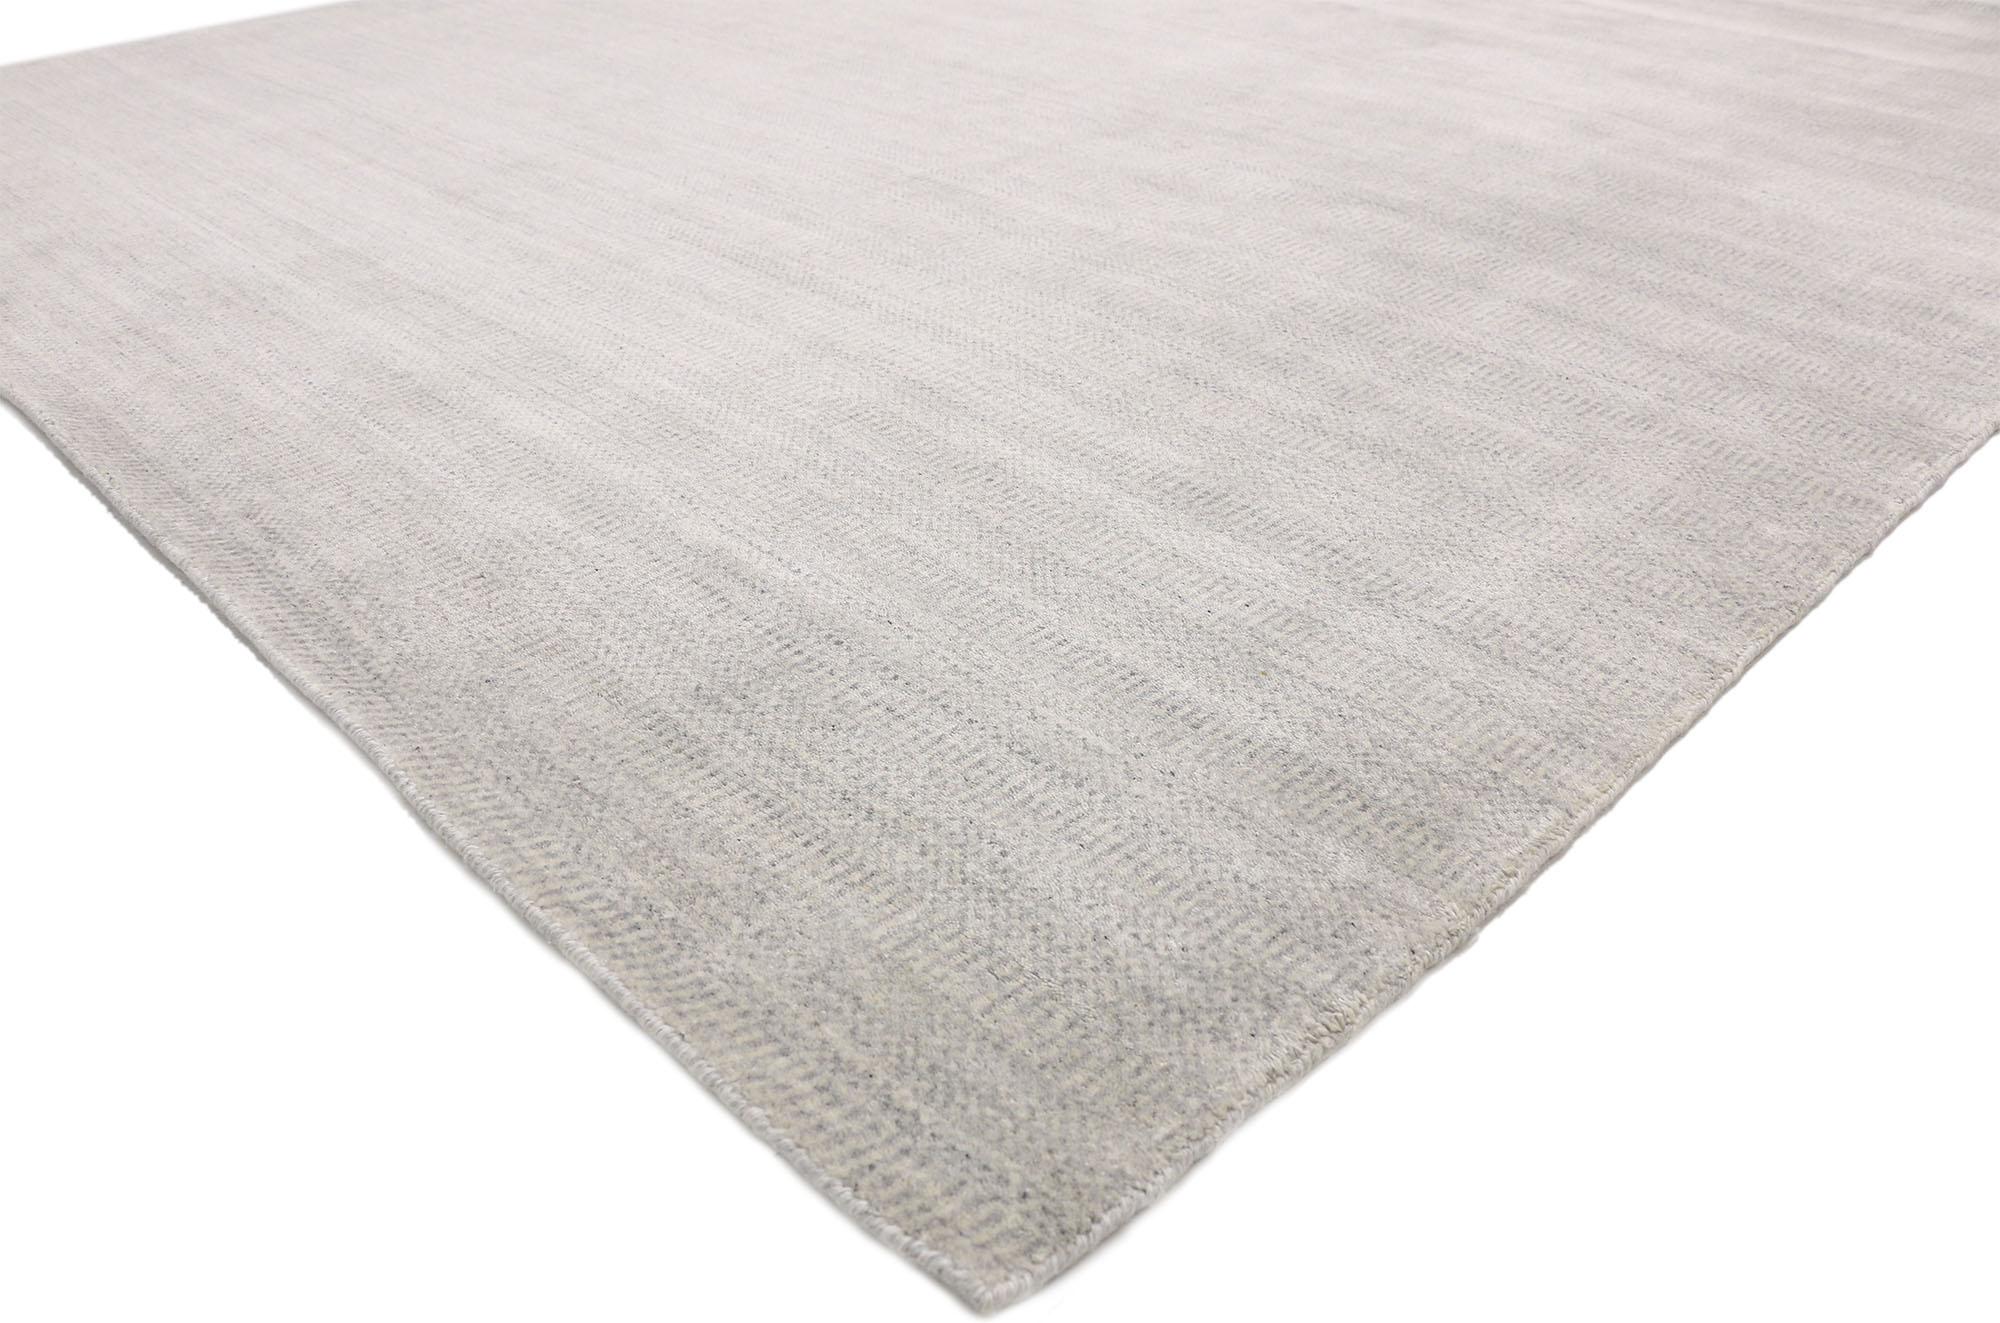 30438, neuer hellgrauer Übergangsteppich im skandinavisch-modernen Stil. Dieser moderne, hellgraue Teppich im nordischen Stil verkörpert die natürliche Schönheit der Wolle und die Eleganz einer hellen, grauen Farbpalette und ist dabei mühelos schick